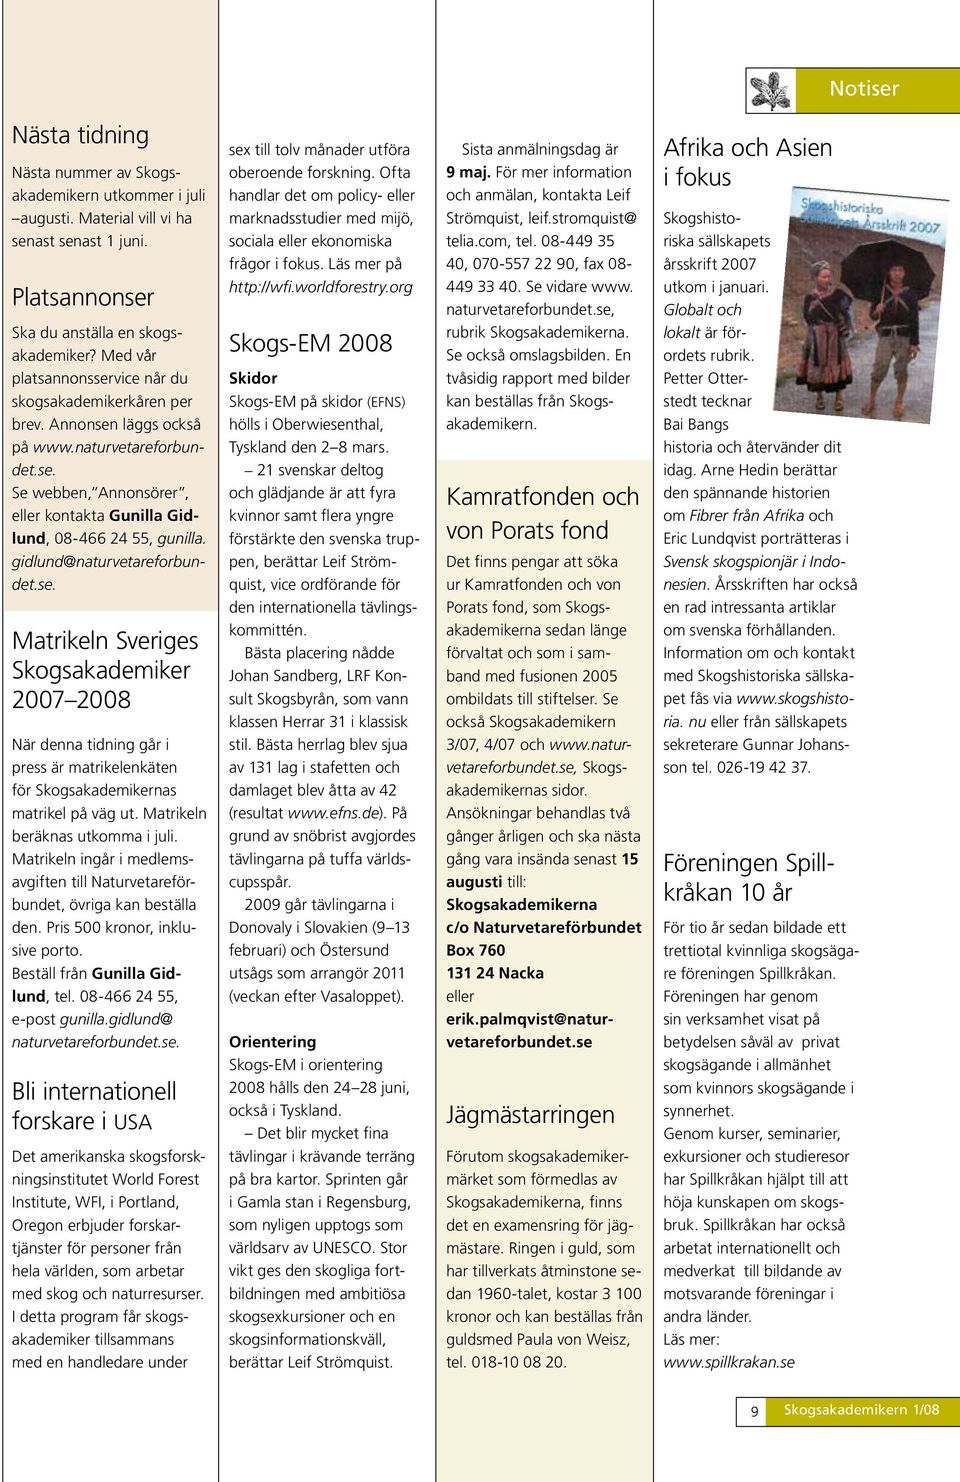 gidlund@naturvetareforbundet.se. Matrikeln Sveriges Skogsakademiker 2007 2008 När denna tidning går i press är matrikelenkäten för Skogsakademikernas matrikel på väg ut.